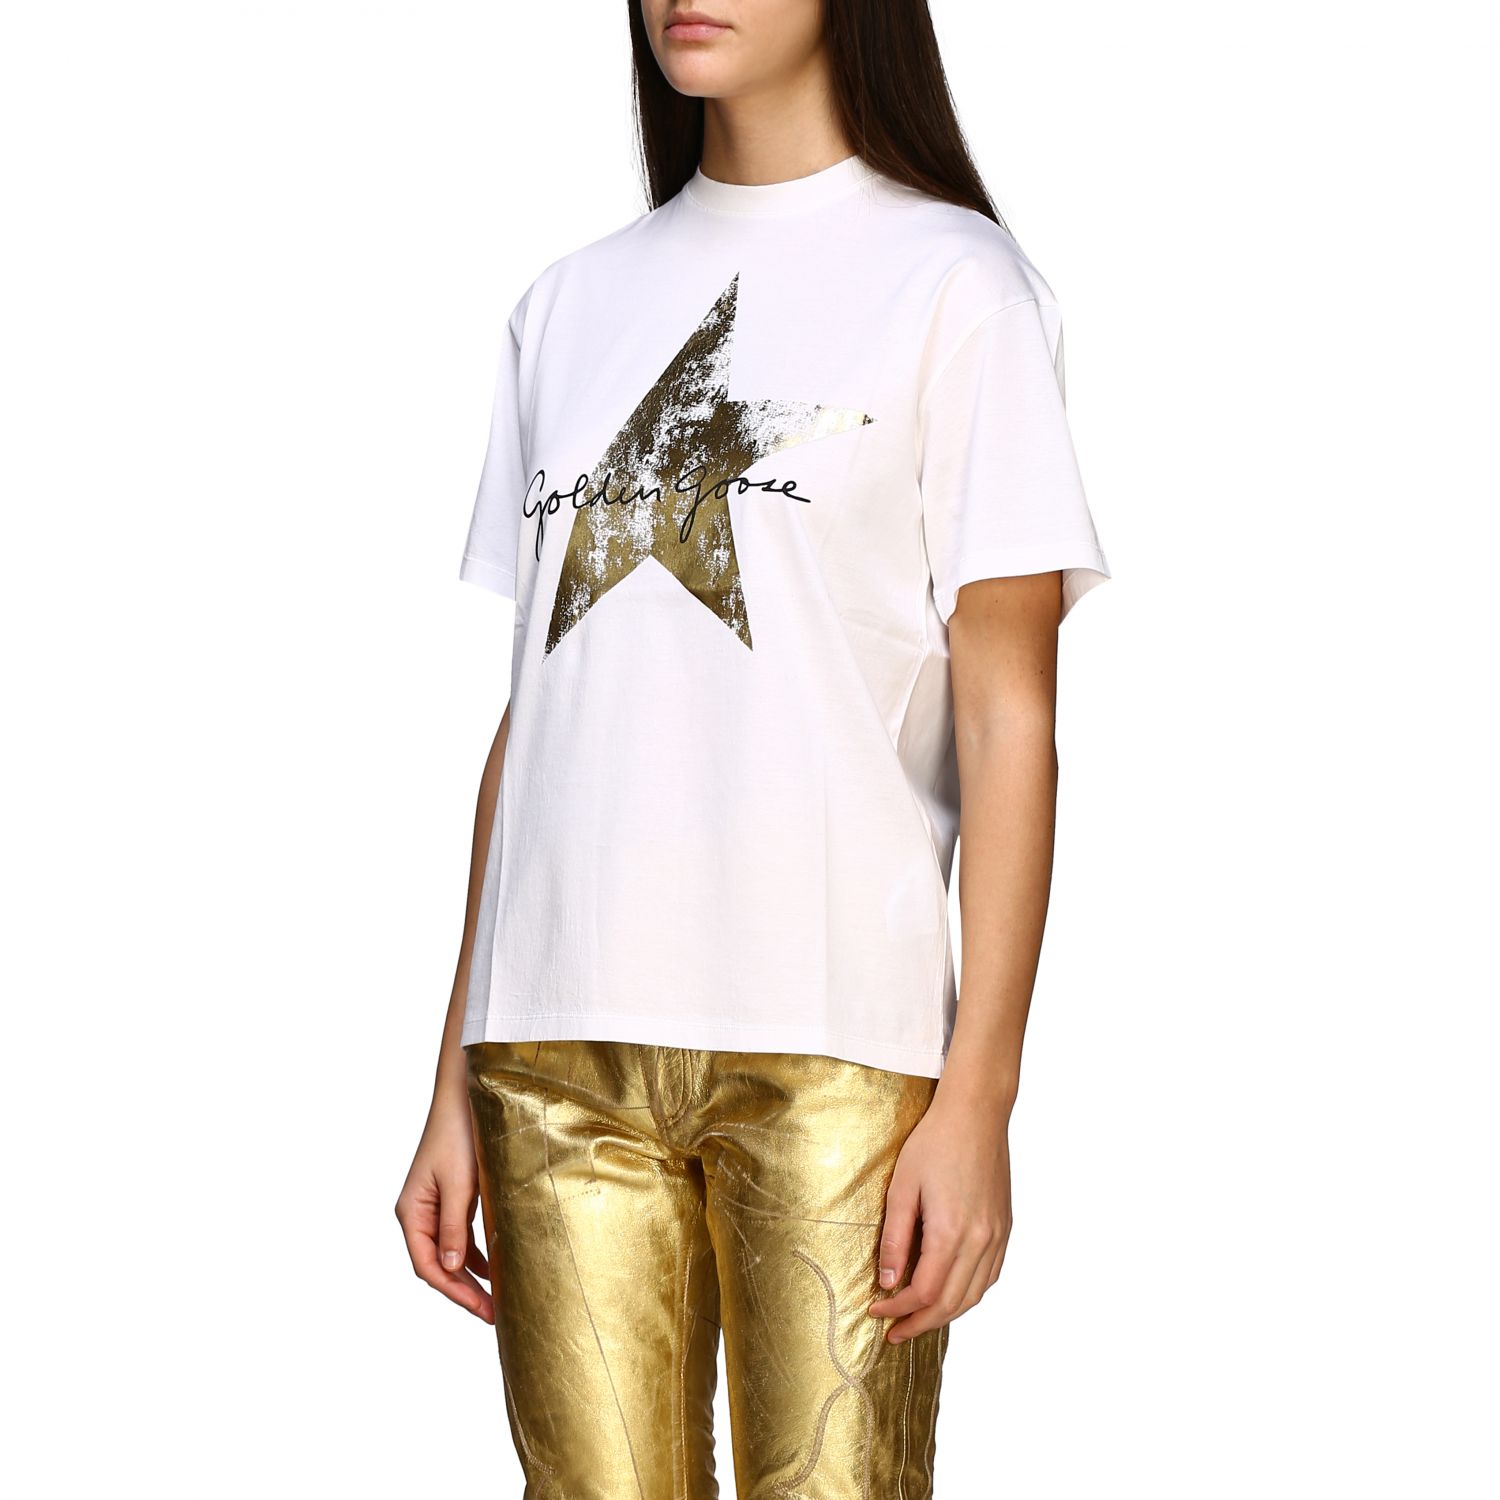 Golden Goose Outlet: T-shirt women | T-Shirt Golden Goose Women White | T-Shirt Golden Goose 